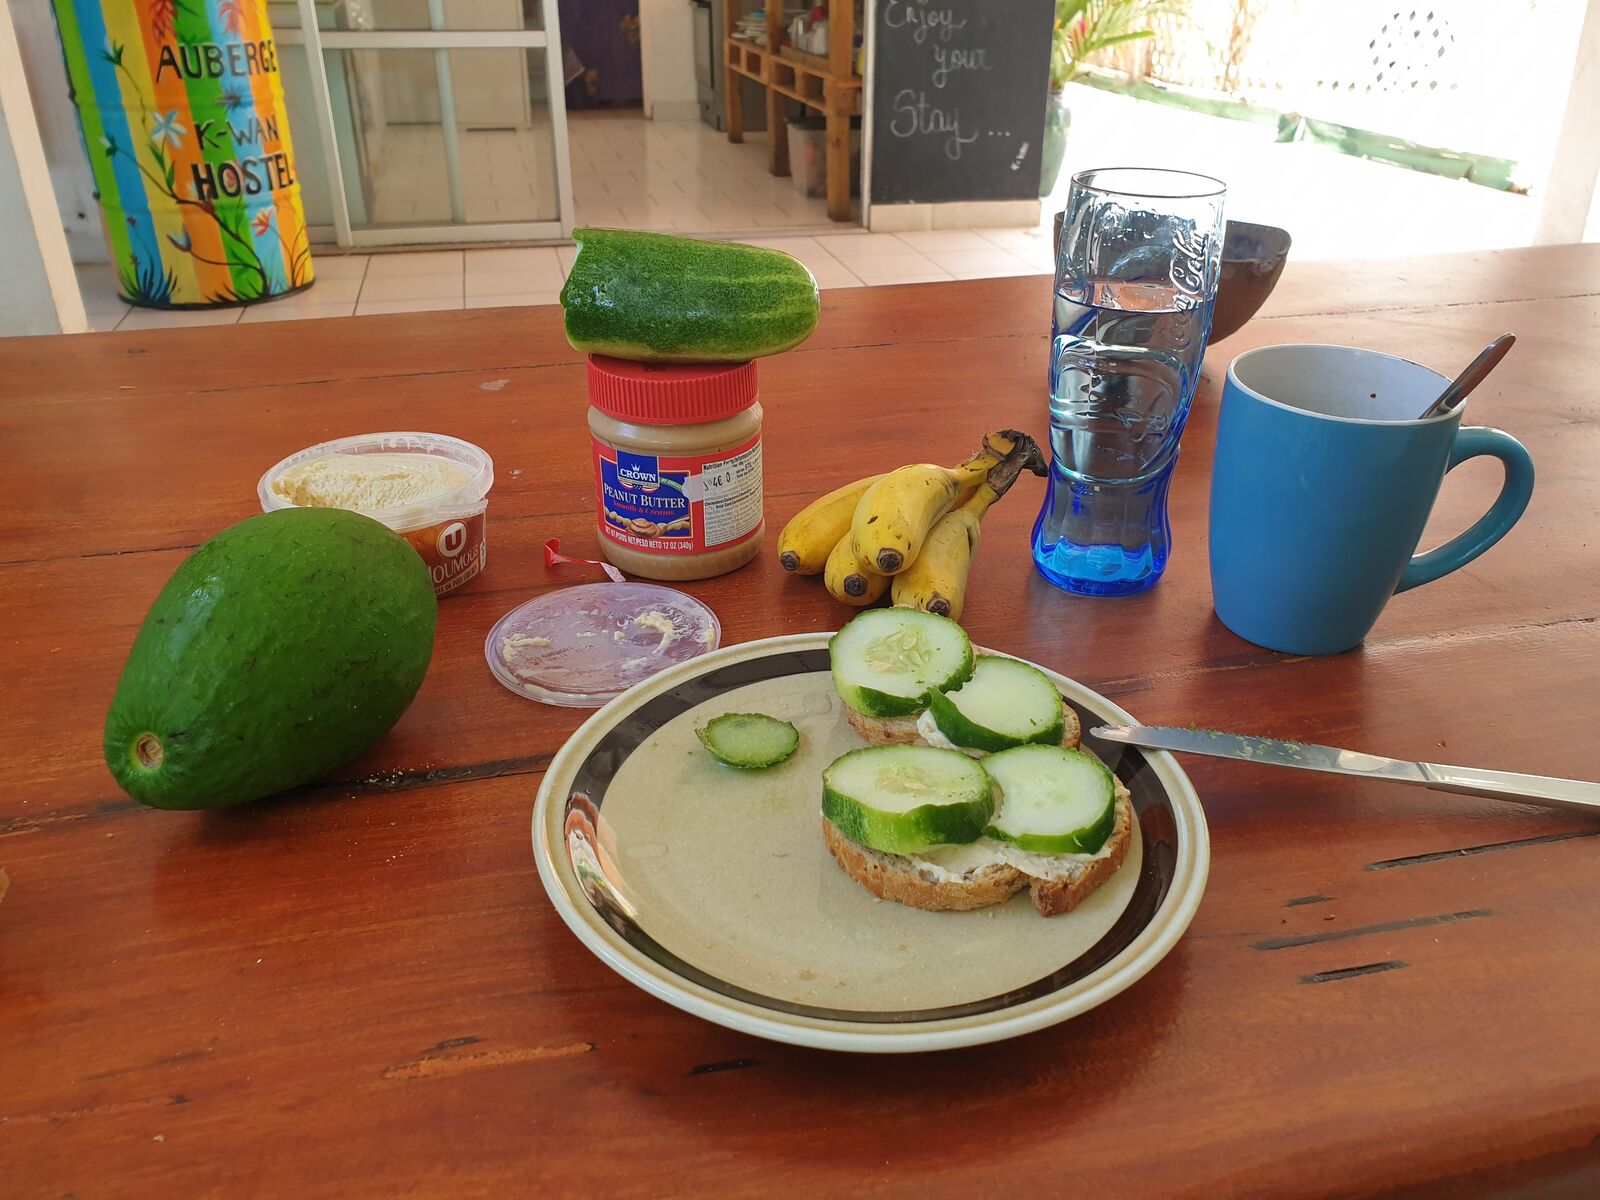 Mein Hostelfrühstück mit Brot, Banane, Gurke und Avocado aus Guadeloupe